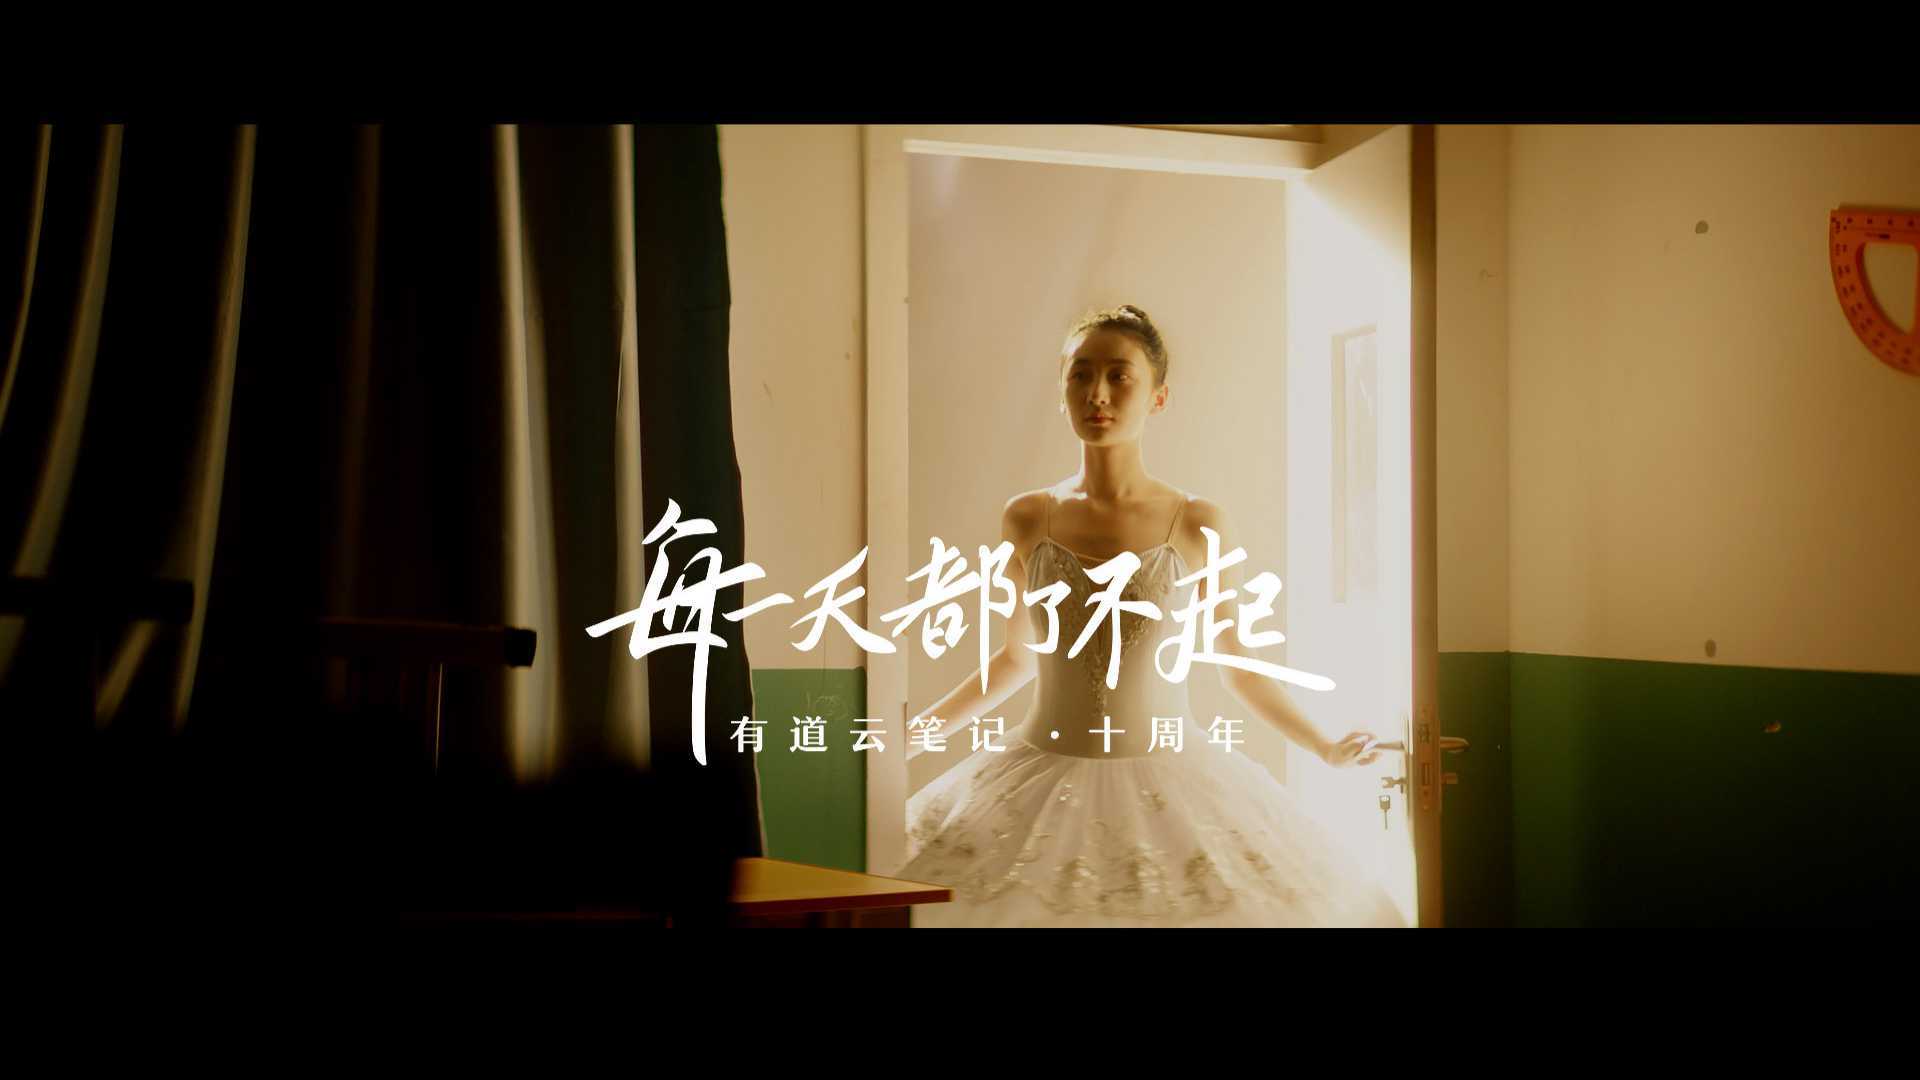 CHiEEN - 有道云笔记十周年 - 品牌宣传片